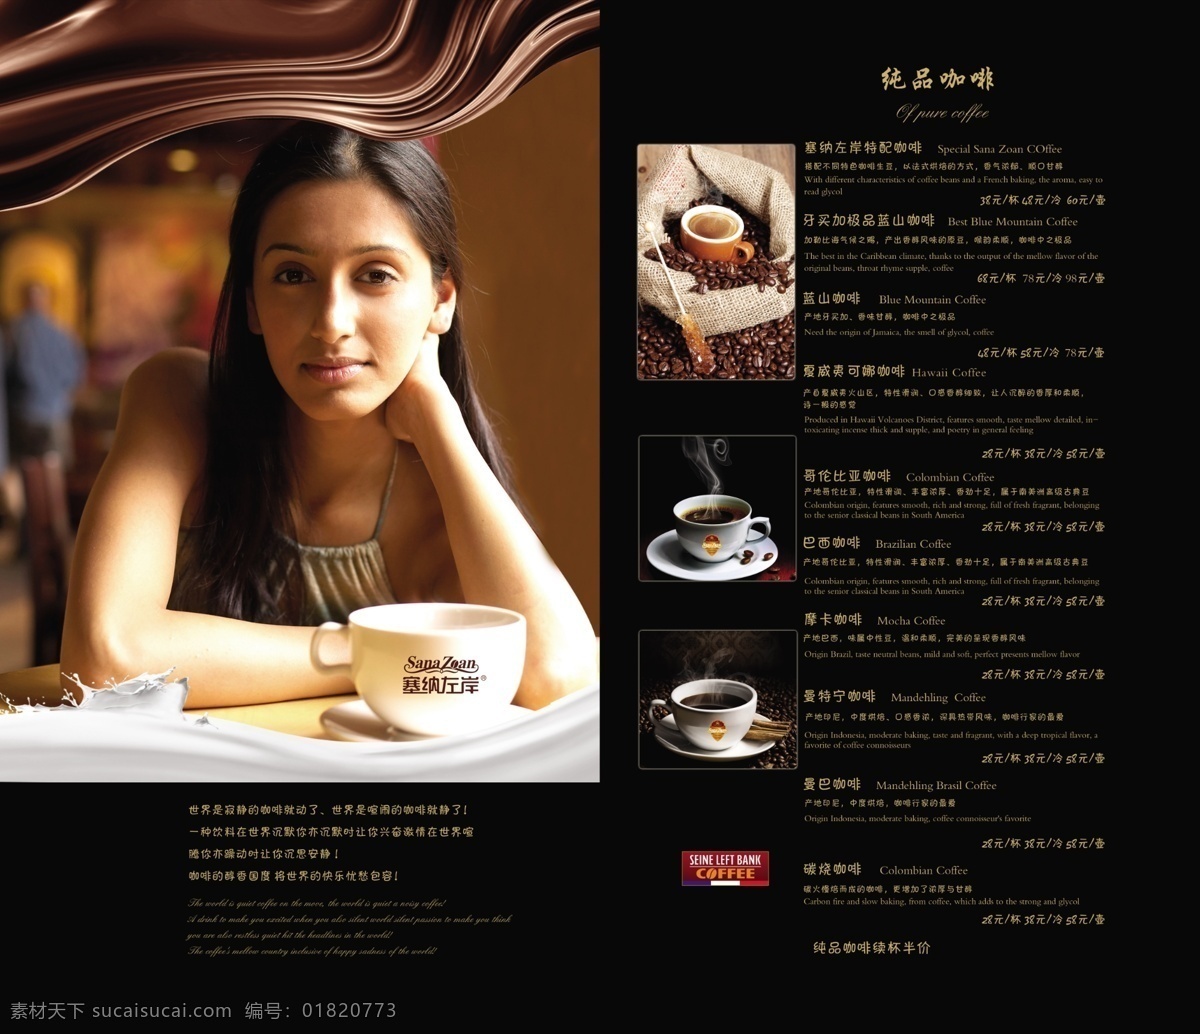 塞纳 左岸 咖啡 菜谱 标志 咖啡杯 美女 咖啡豆 产地 价格 黑色背景 牛奶 巧克力 菜单菜谱 广告设计模板 源文件